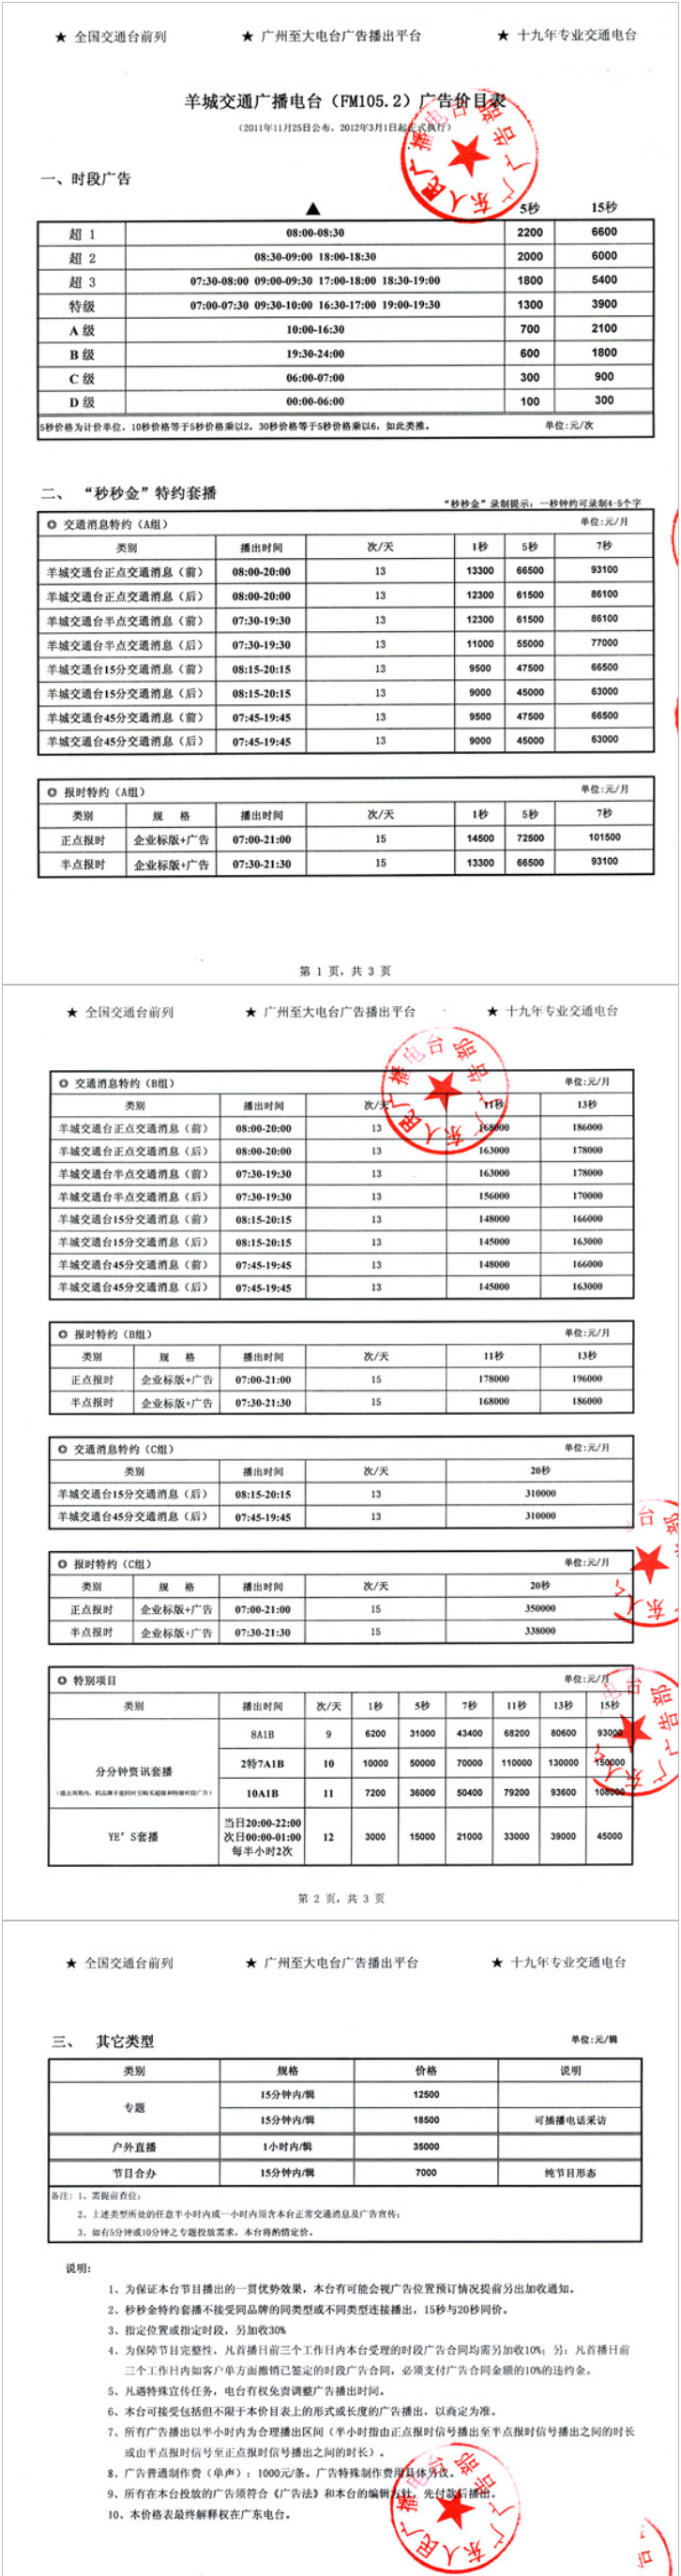 2012广东人民广播电台羊城交通台 FM105.2广告报价表.png